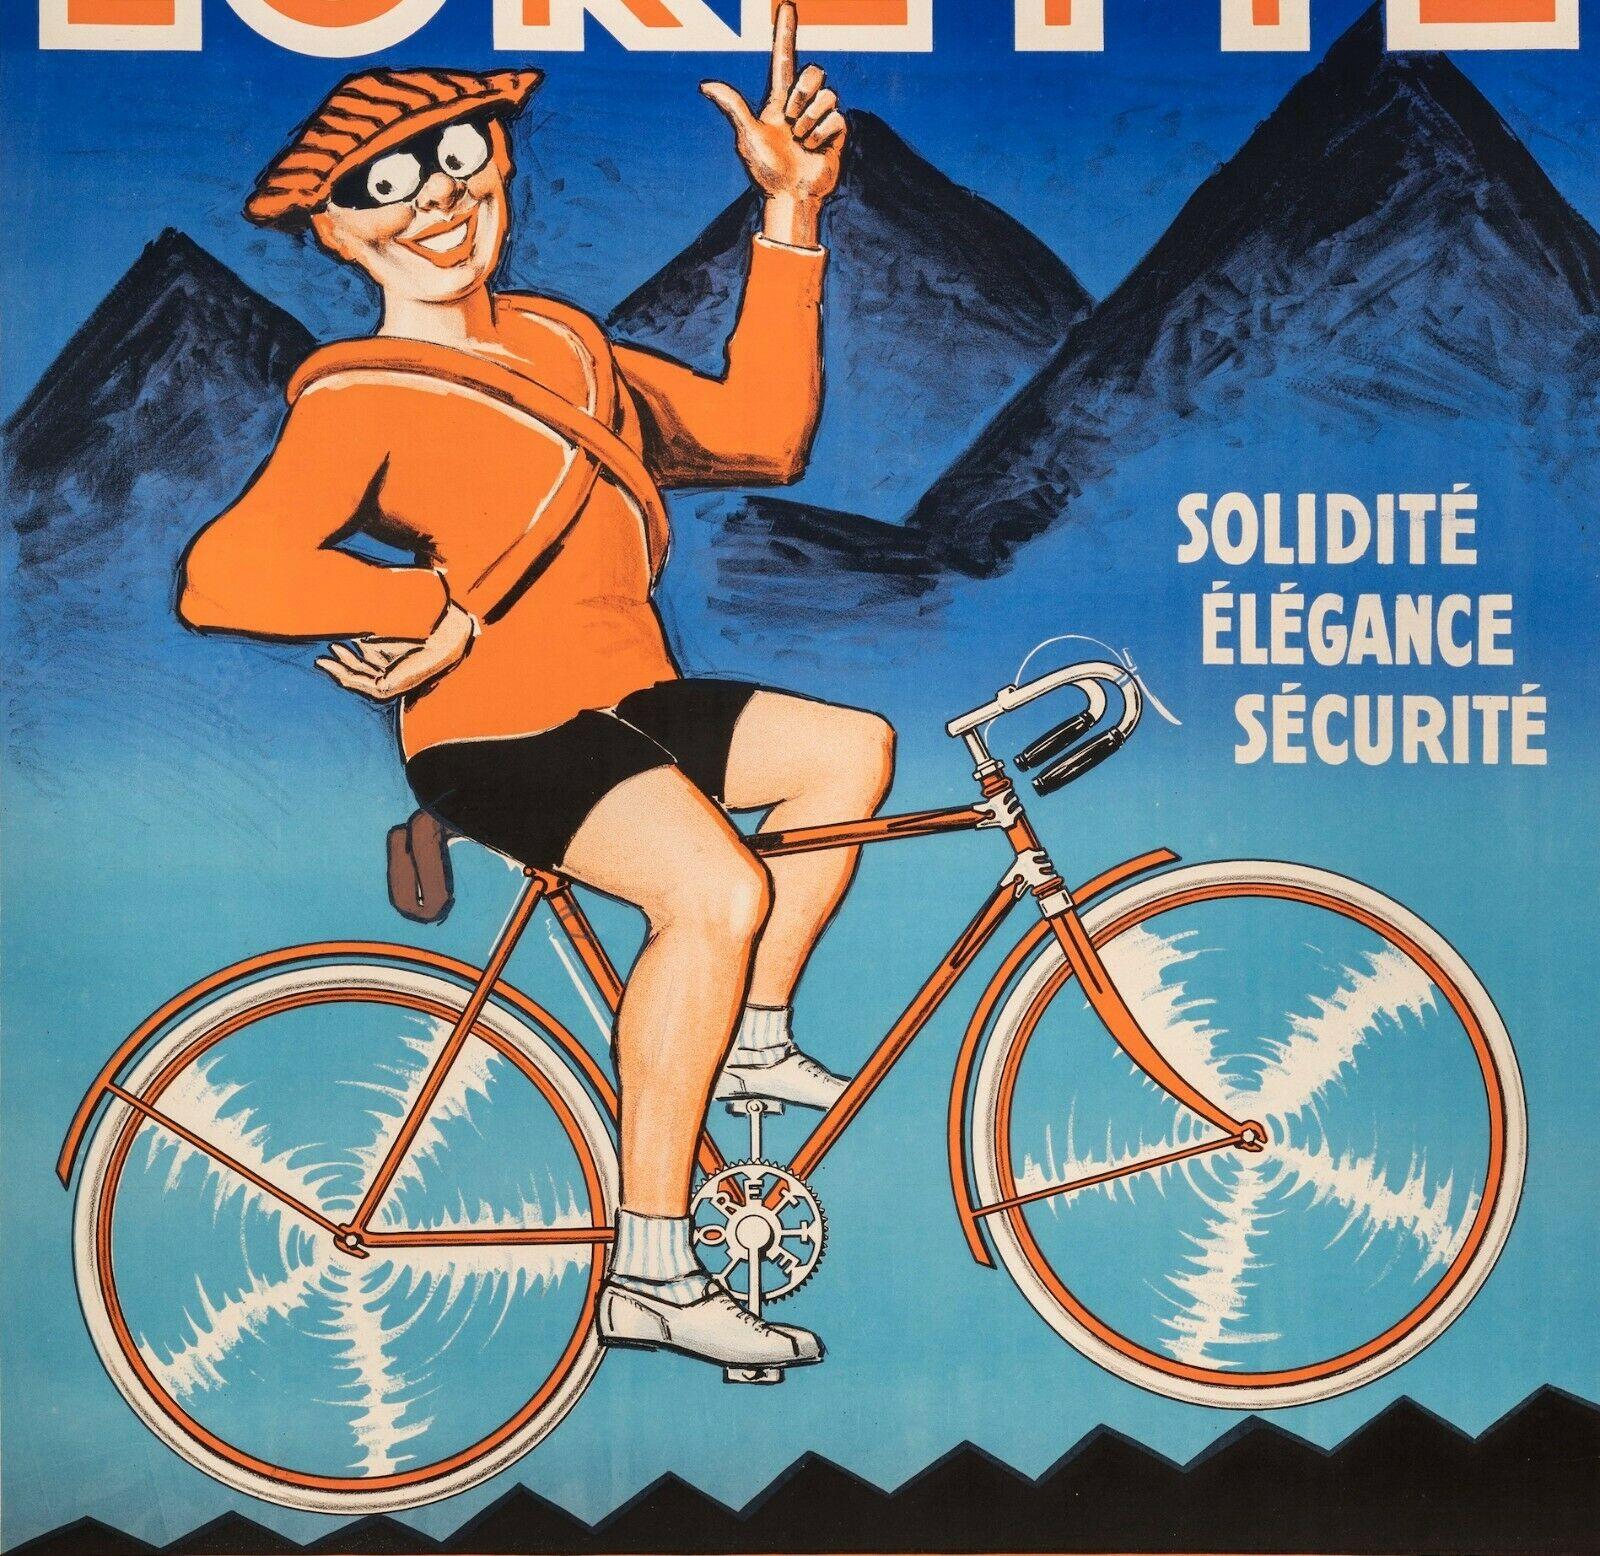 Originalplakat „Cycles Lorette-Cycling-Mountain Bicycle“, um 1925

Werbeplakat für Lorette Cycles. 
Ein Radfahrer in orangefarbener Kleidung fährt mit seinem Fahrrad auf den Berg zu, der im Hintergrund zu sehen ist.

Zusätzliche Details:
MATERIALIEN